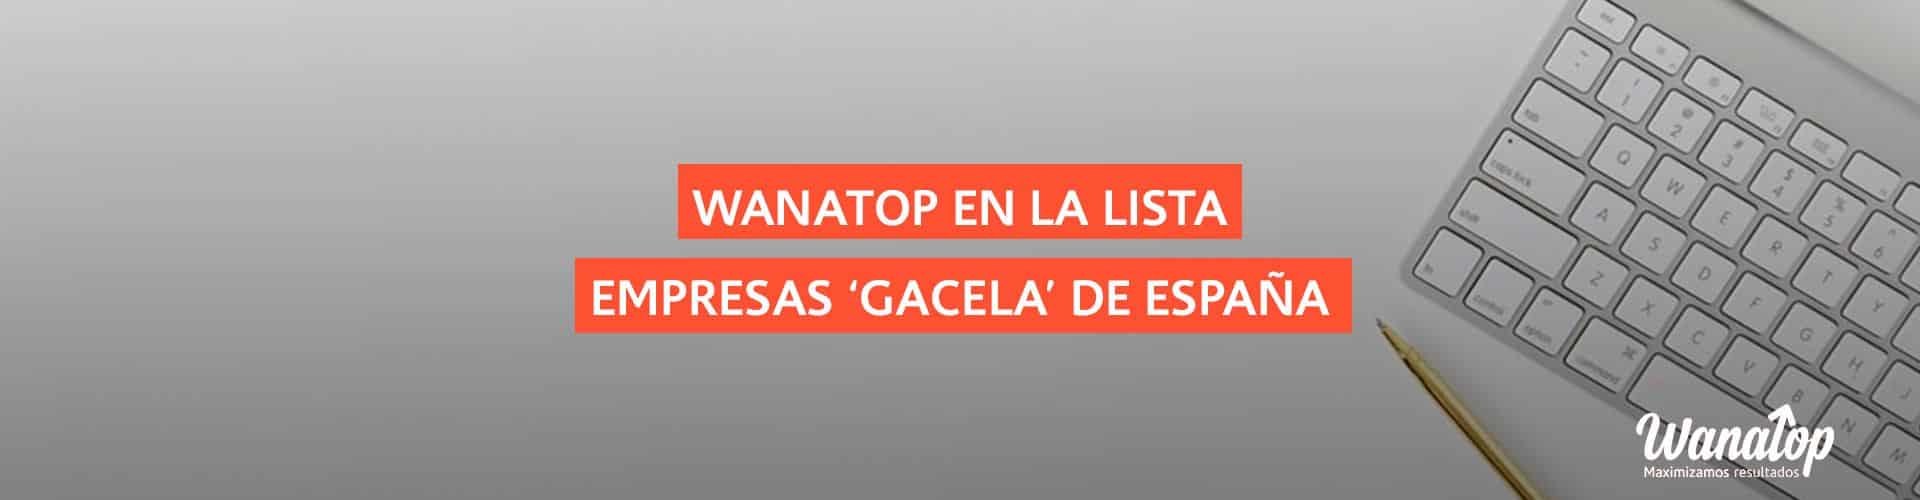 Wanatop se cuela en la lista de empresas ‘gacela’ en España